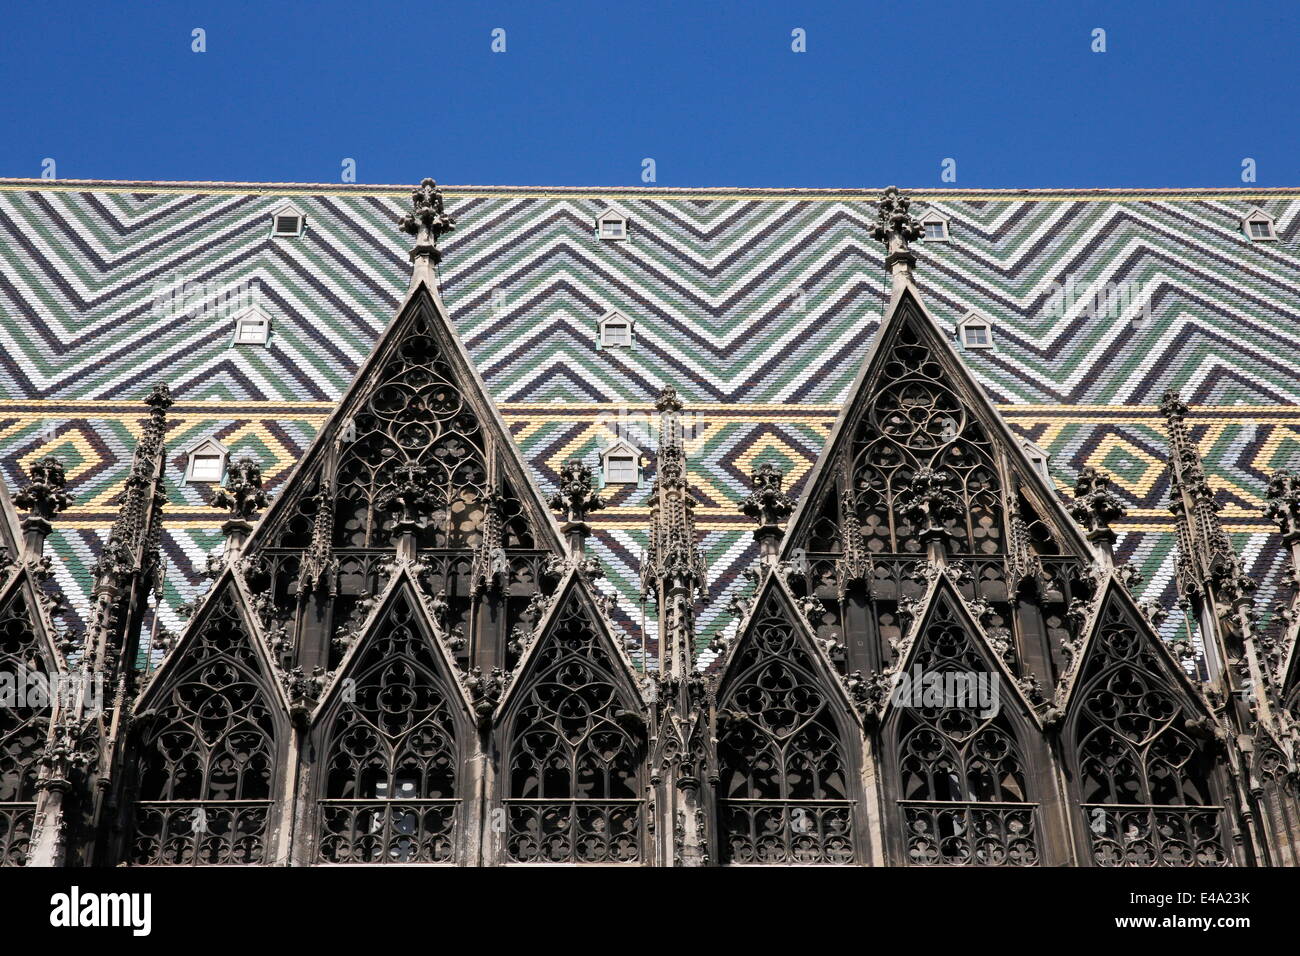 La cathédrale St Stephen, Vienne, Autriche, Europe Banque D'Images